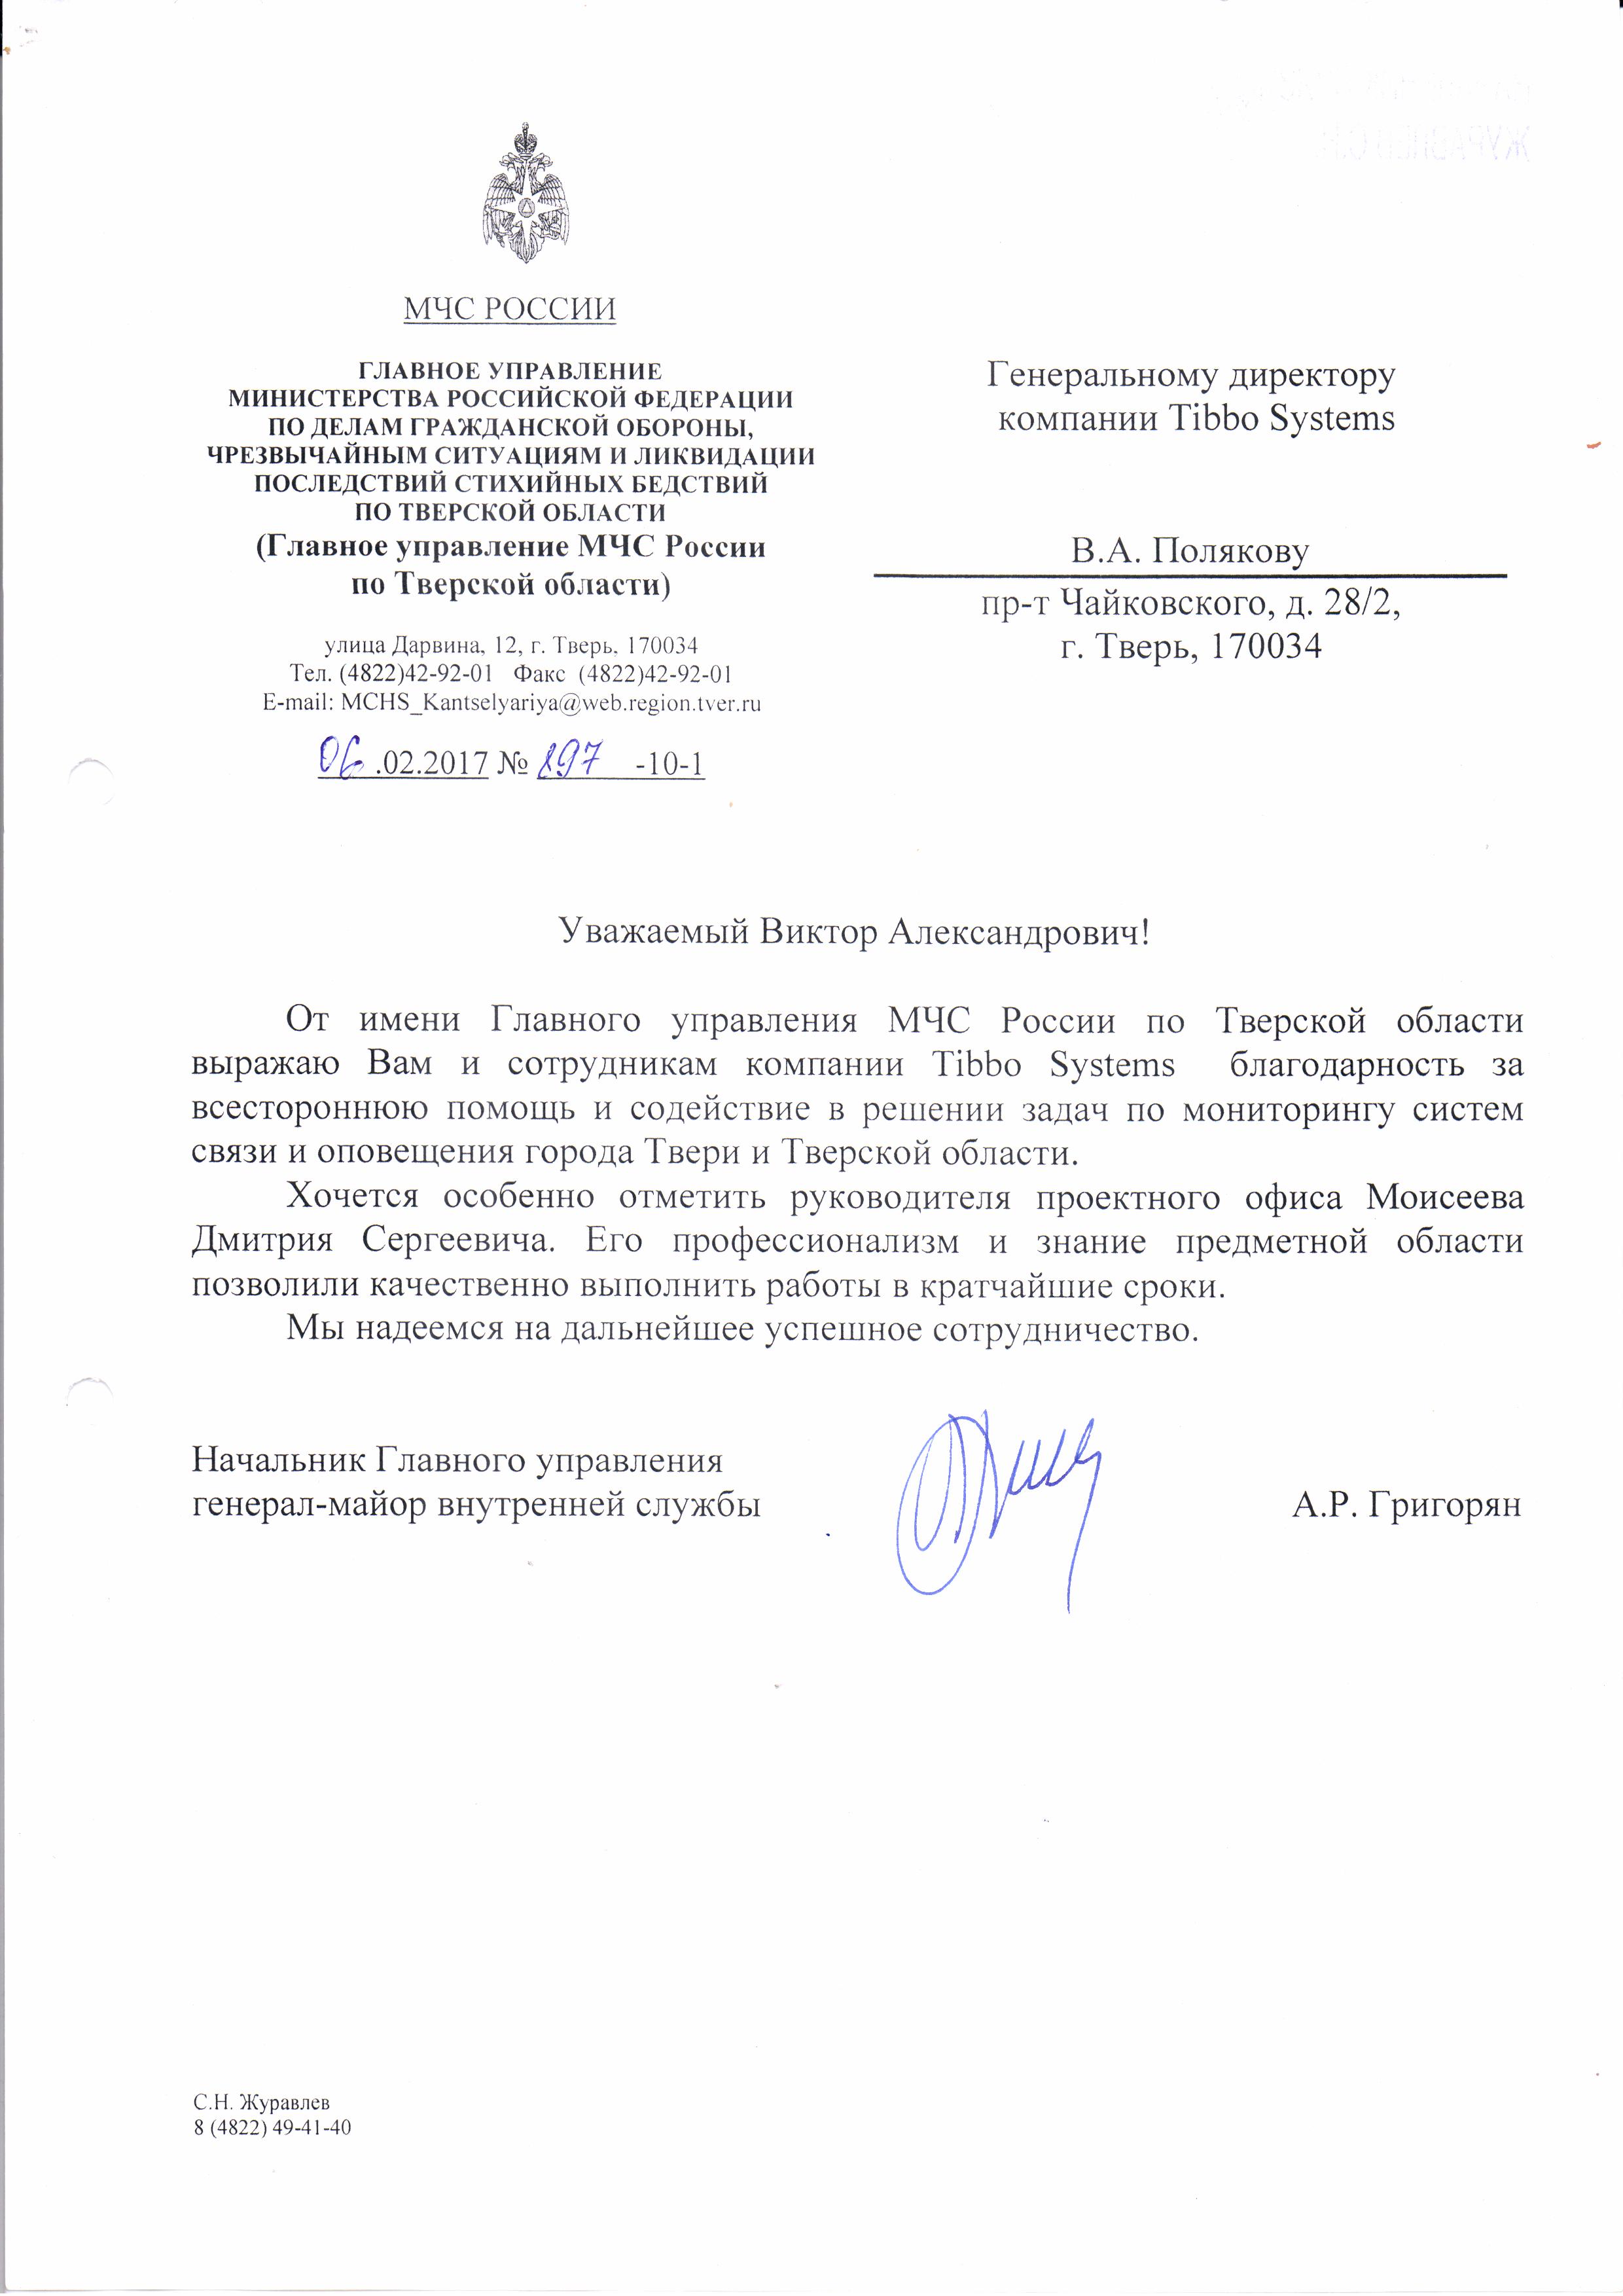 Благодарственное письмо Tibbo Systems от МЧС России за успешное внедрение системы мониторинга AggreGate Network Manager